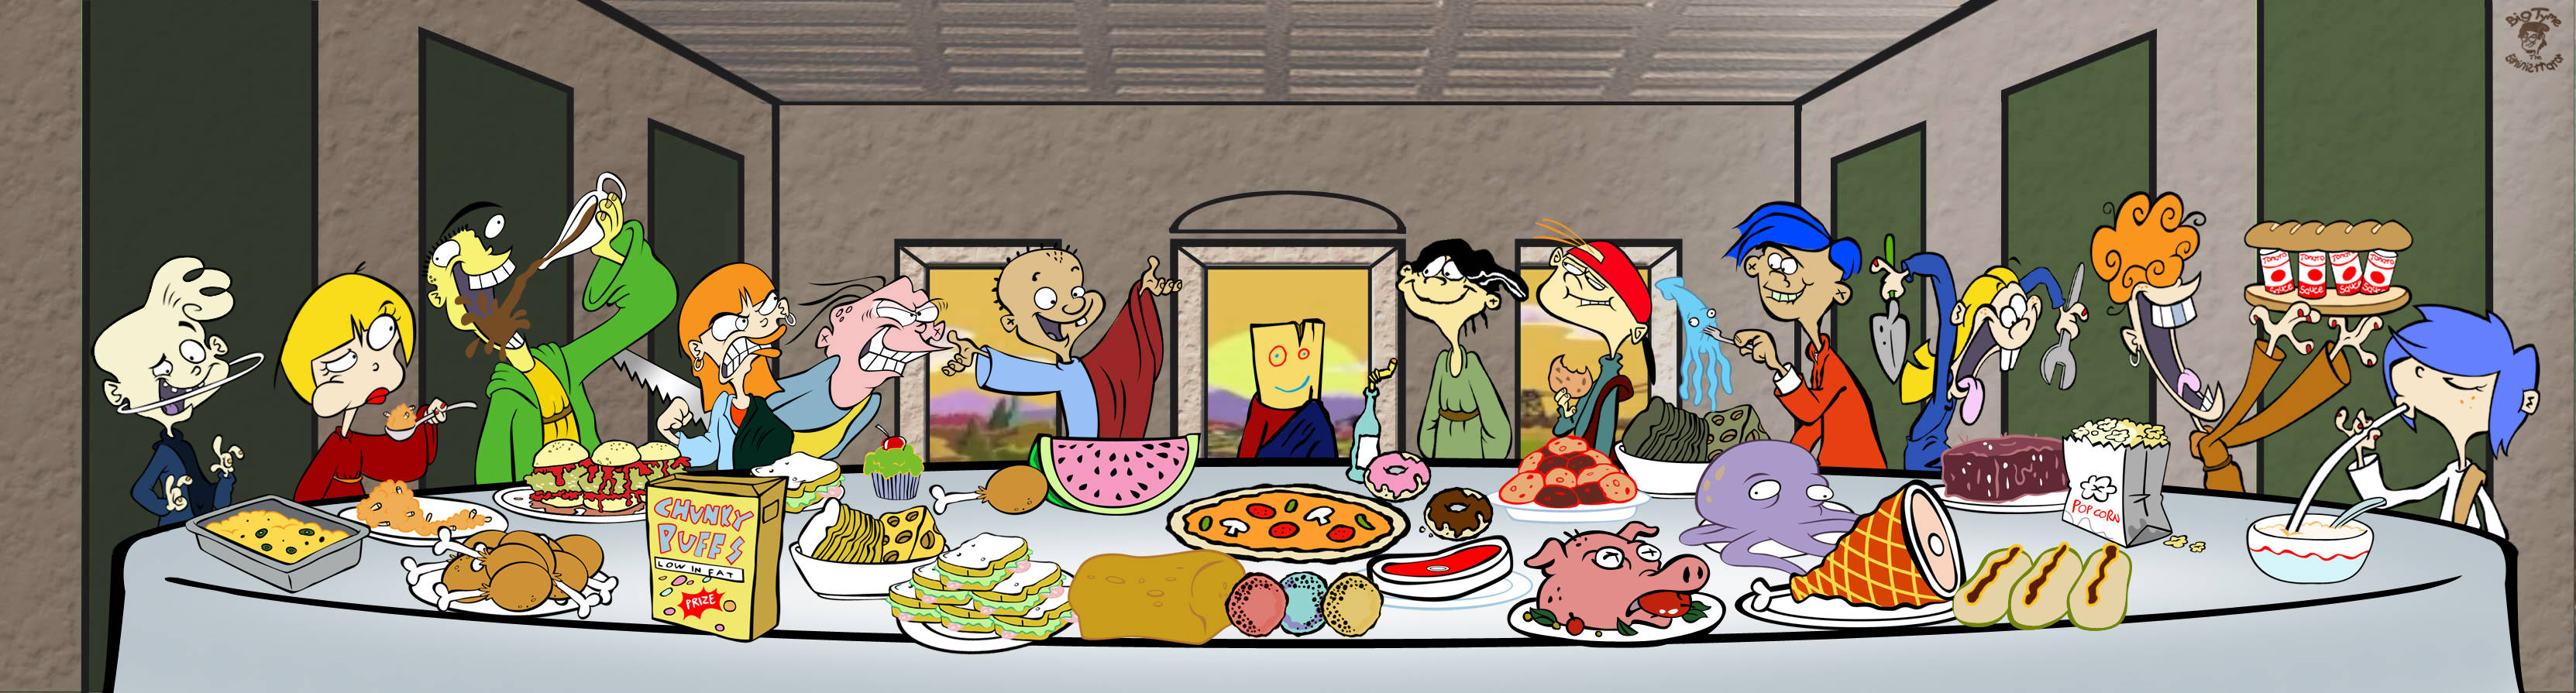 Ed, Edd N Eddy - The Last Supper Parody Wallpaper